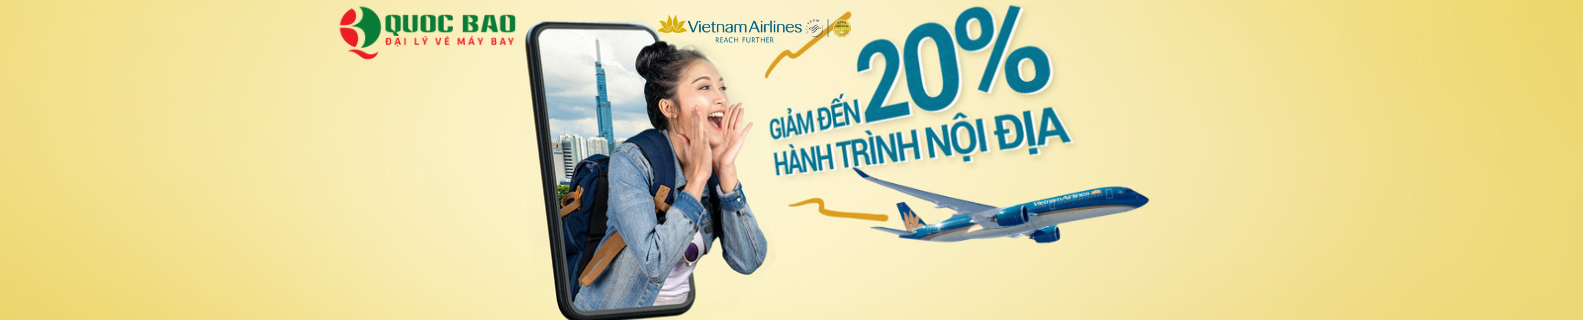 Vé máy bay Nha Trang đi Hà Nội